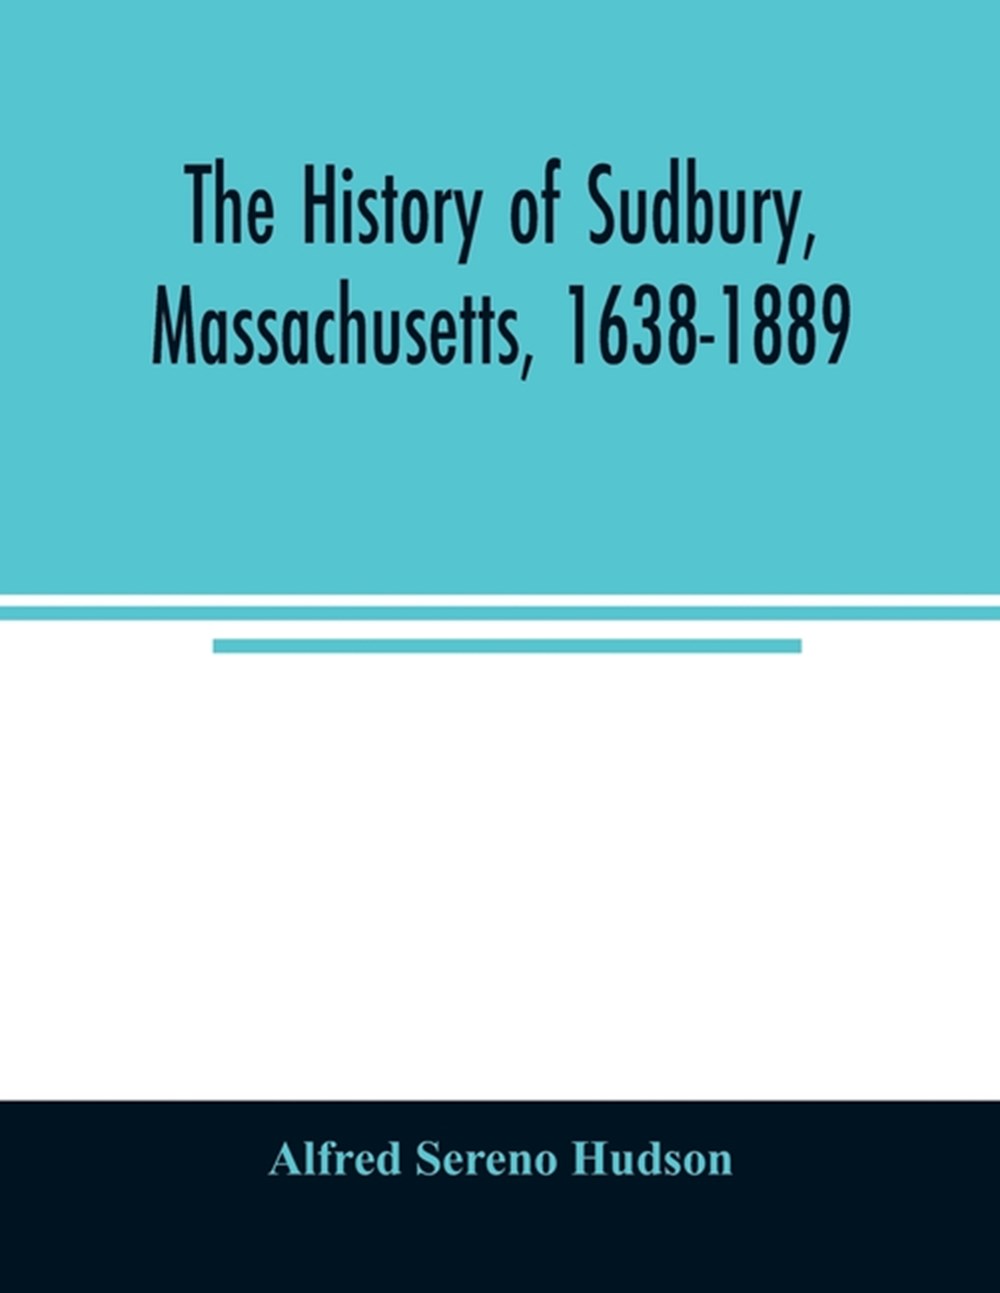 history of Sudbury, Massachusetts, 1638-1889